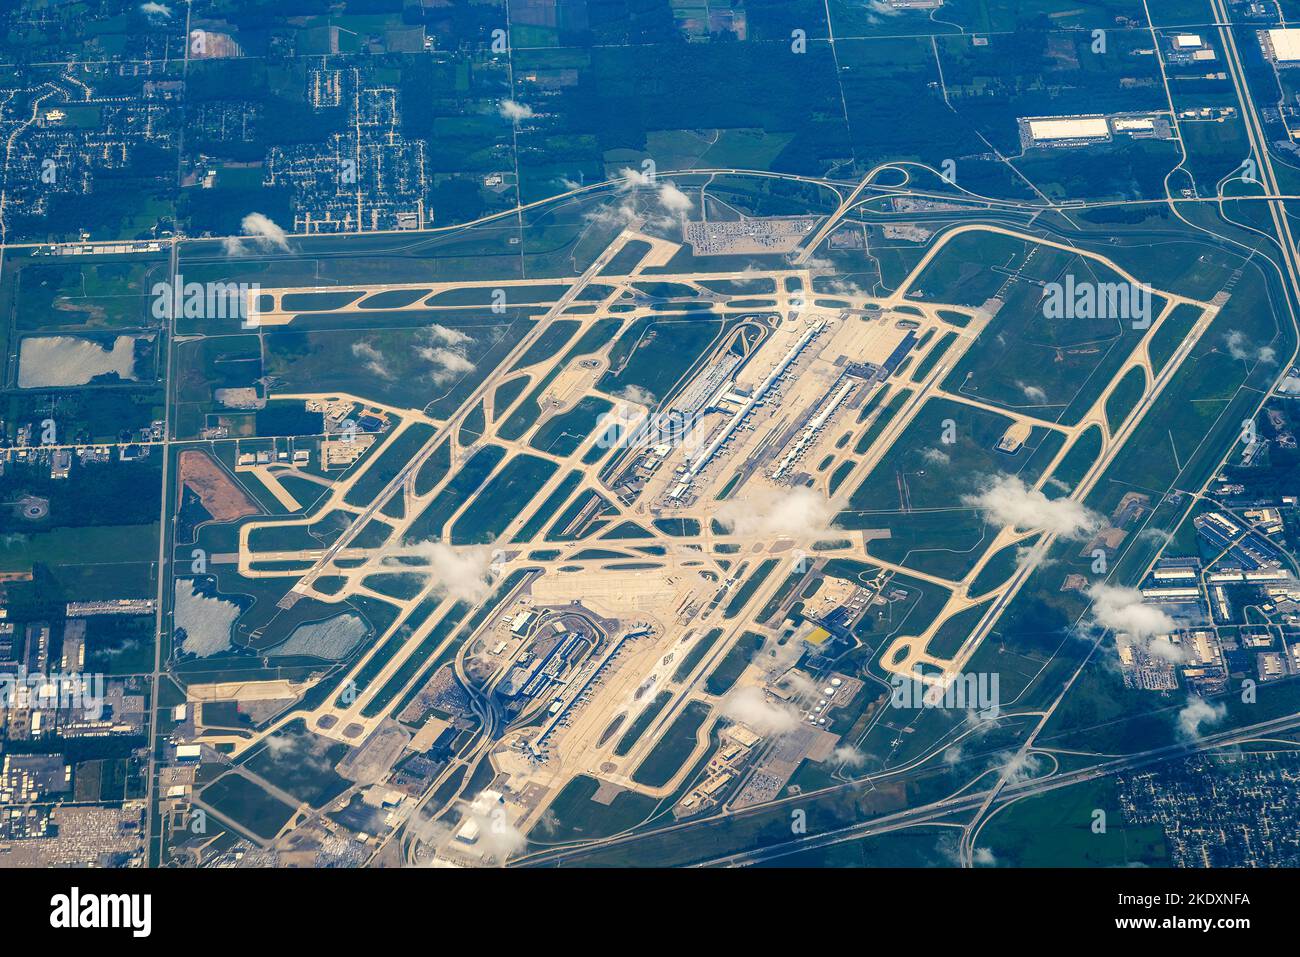 Vue aérienne de l'aéroport Detroit Metropolitan Wayne County Airport (DTW), Detroit, Michigan, États-Unis Banque D'Images